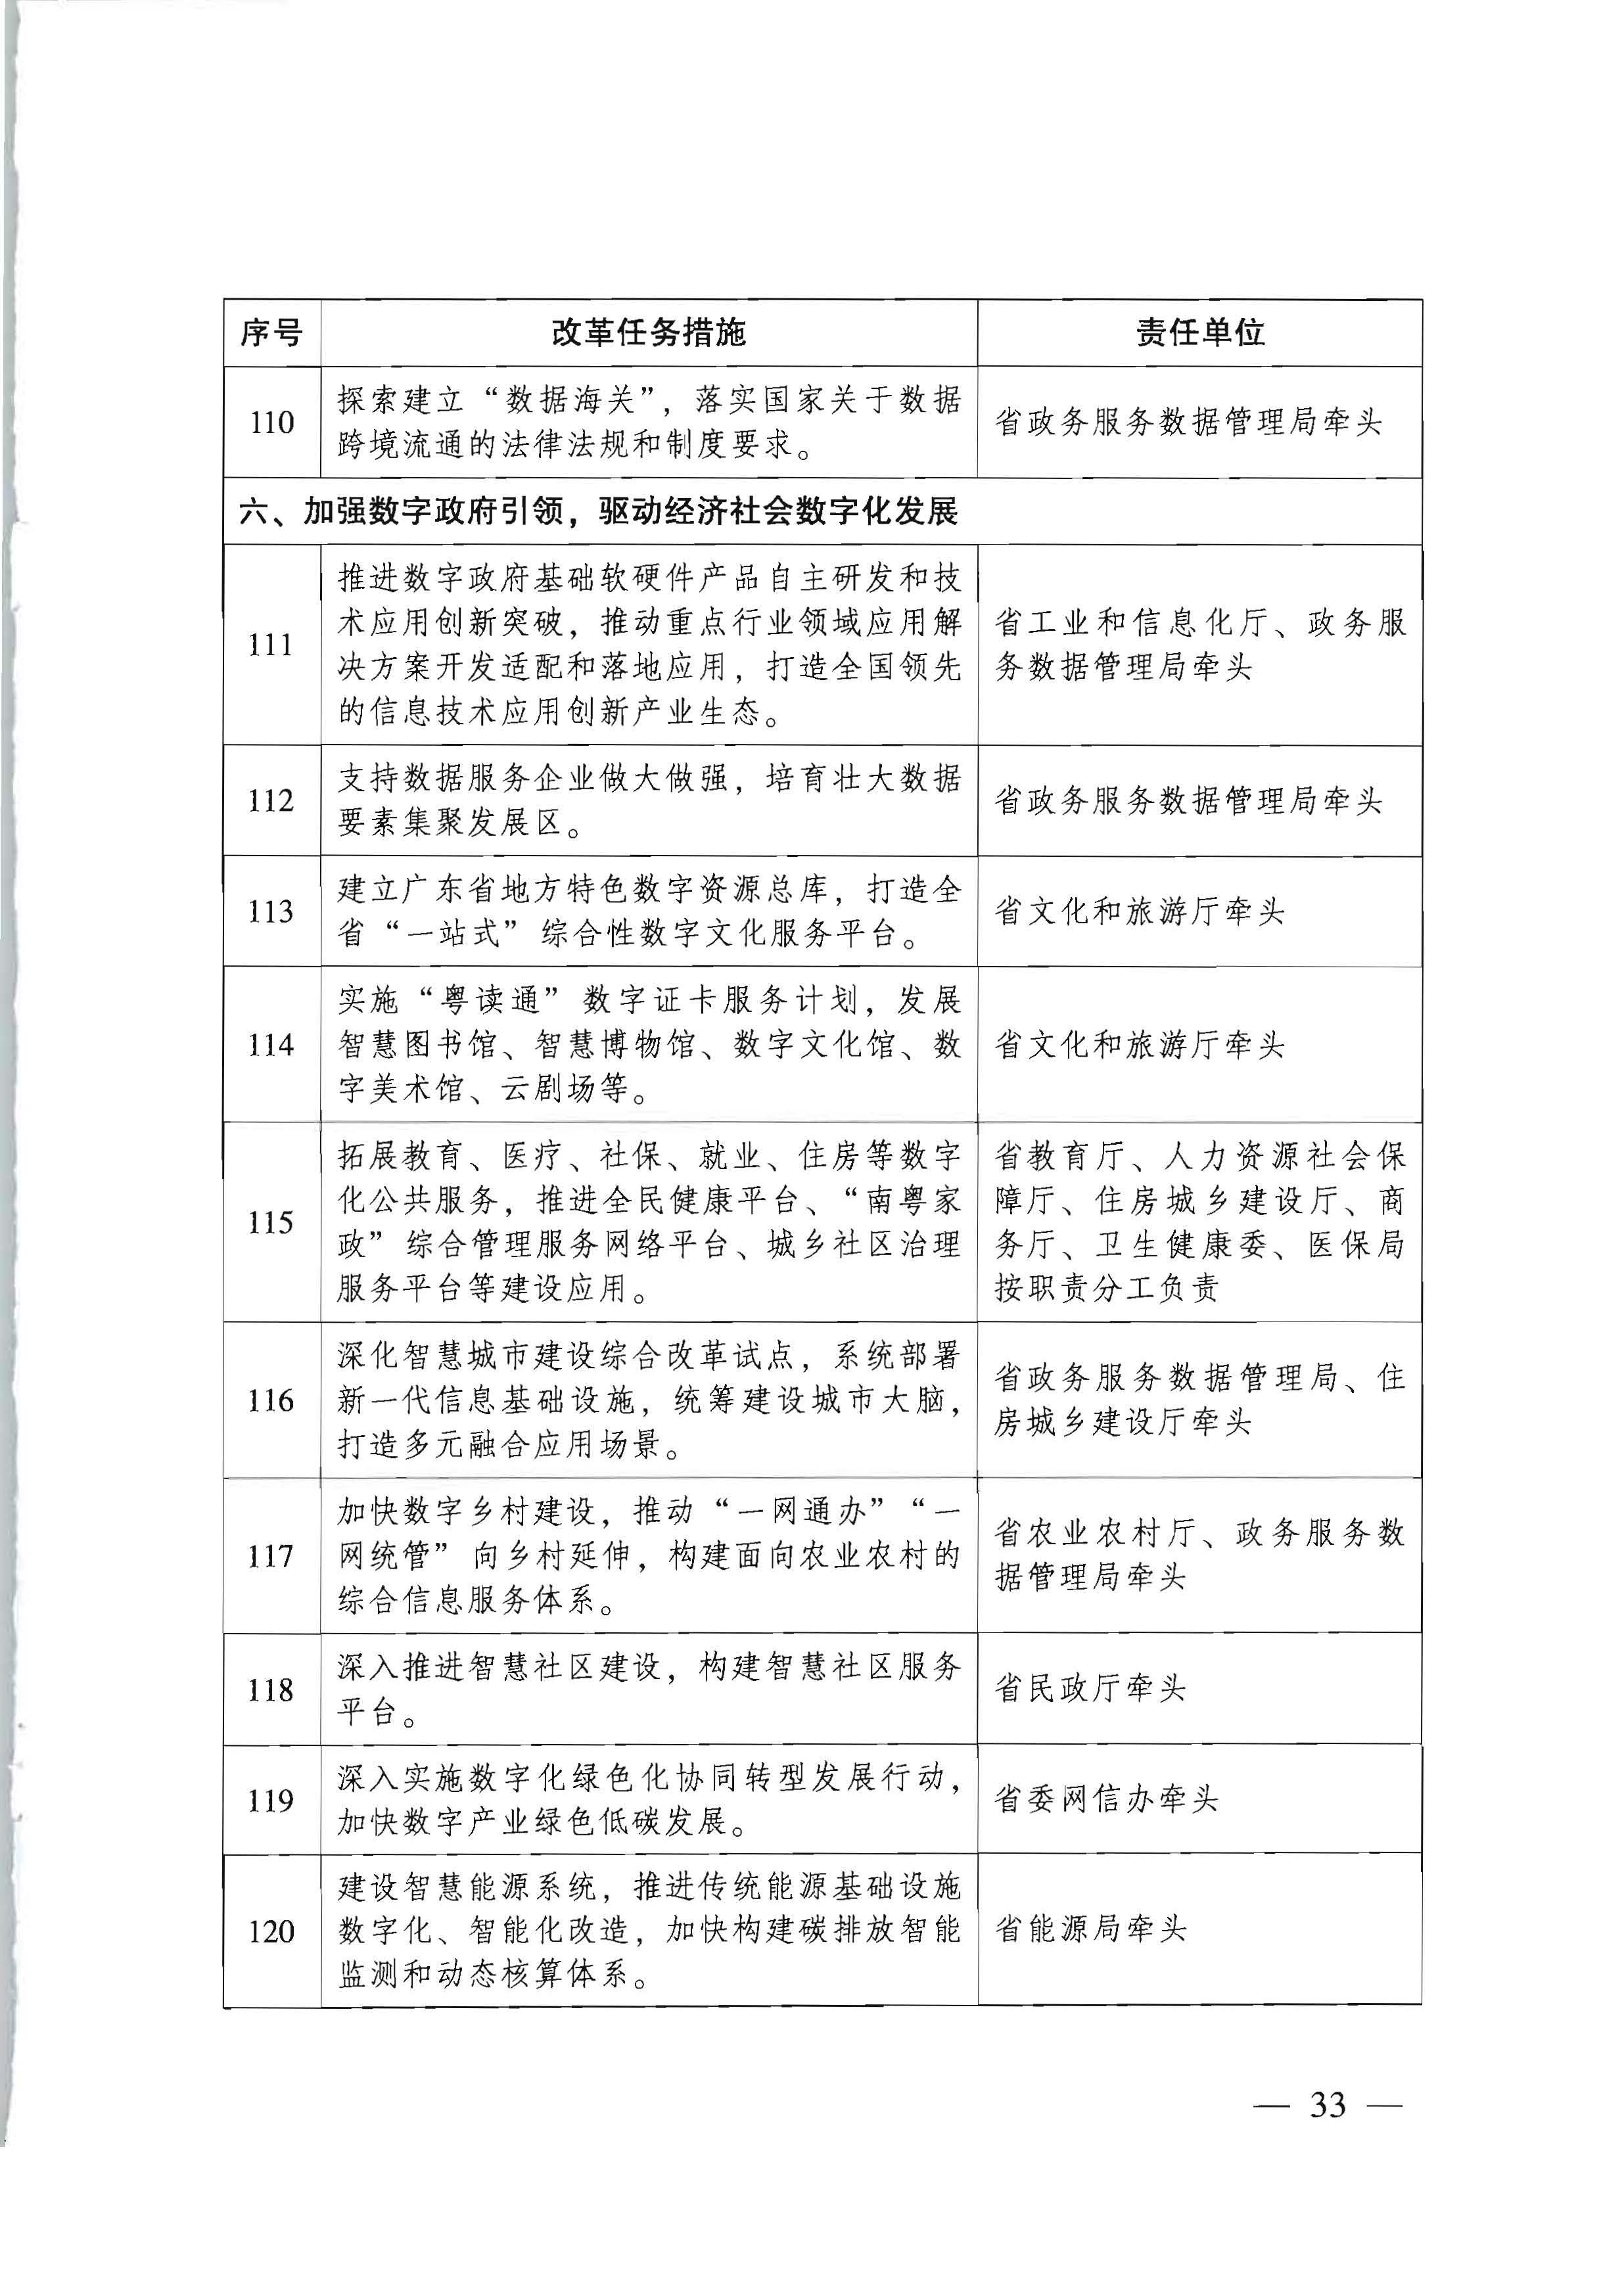 广东省人民政府关于进一步深化数字政府改革建设的实施意见_页面_33.jpg